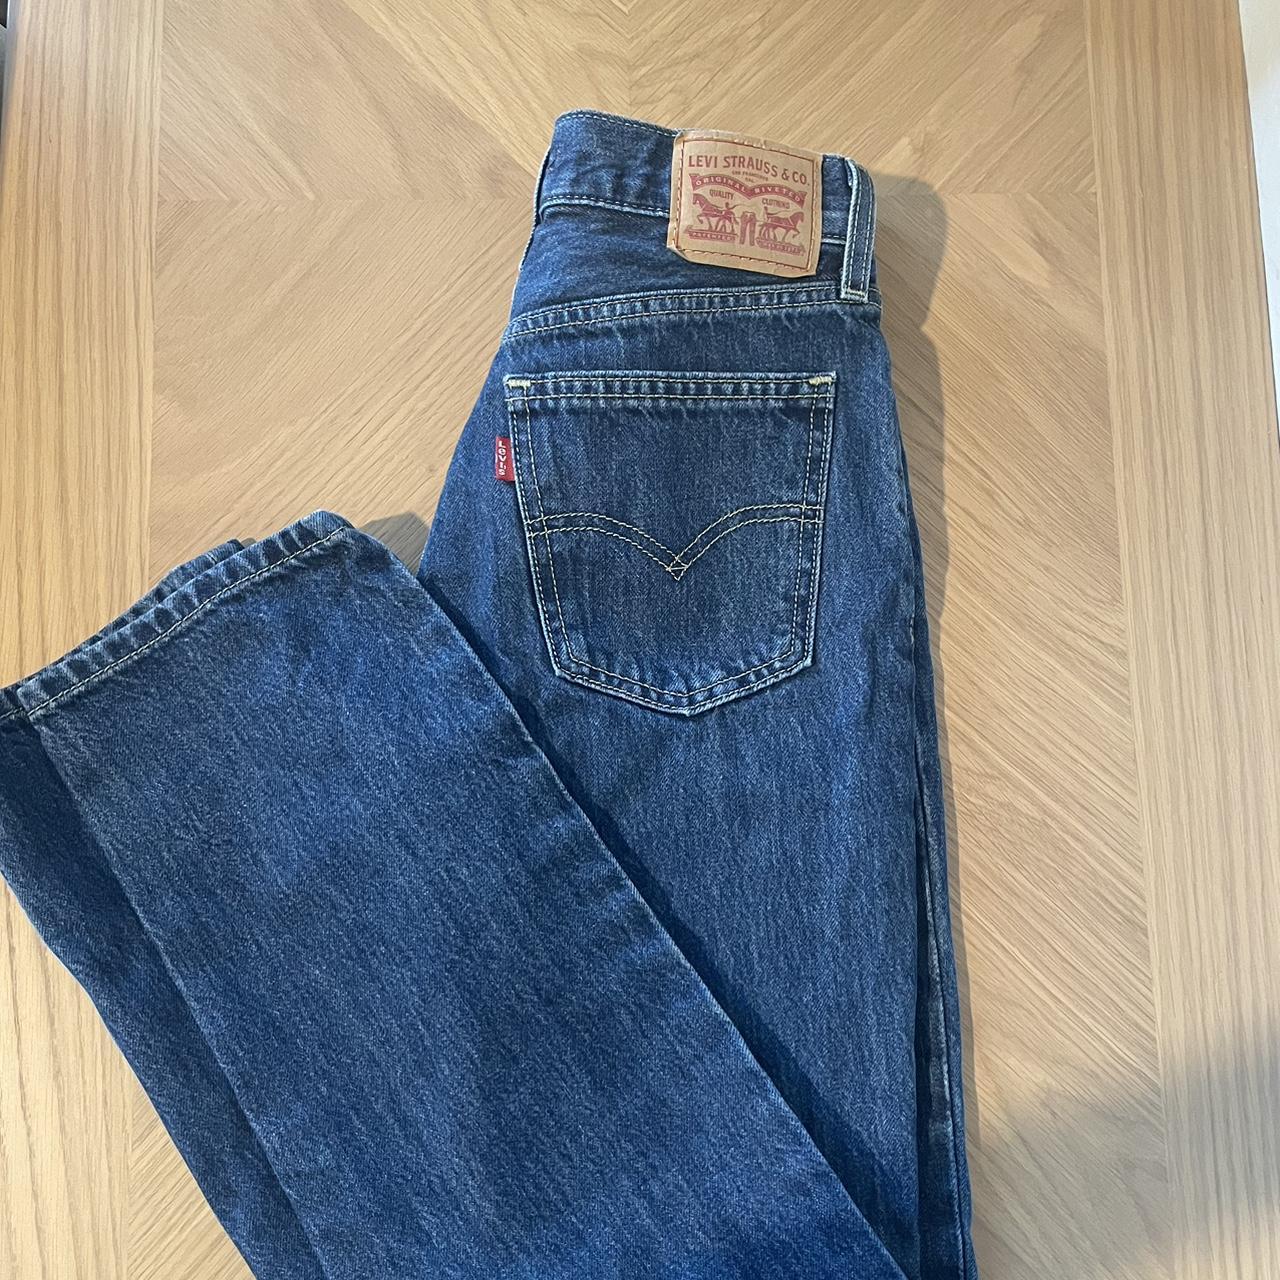 Levi’s women’s low pro jeans waist 24 in inseam 28 in - Depop